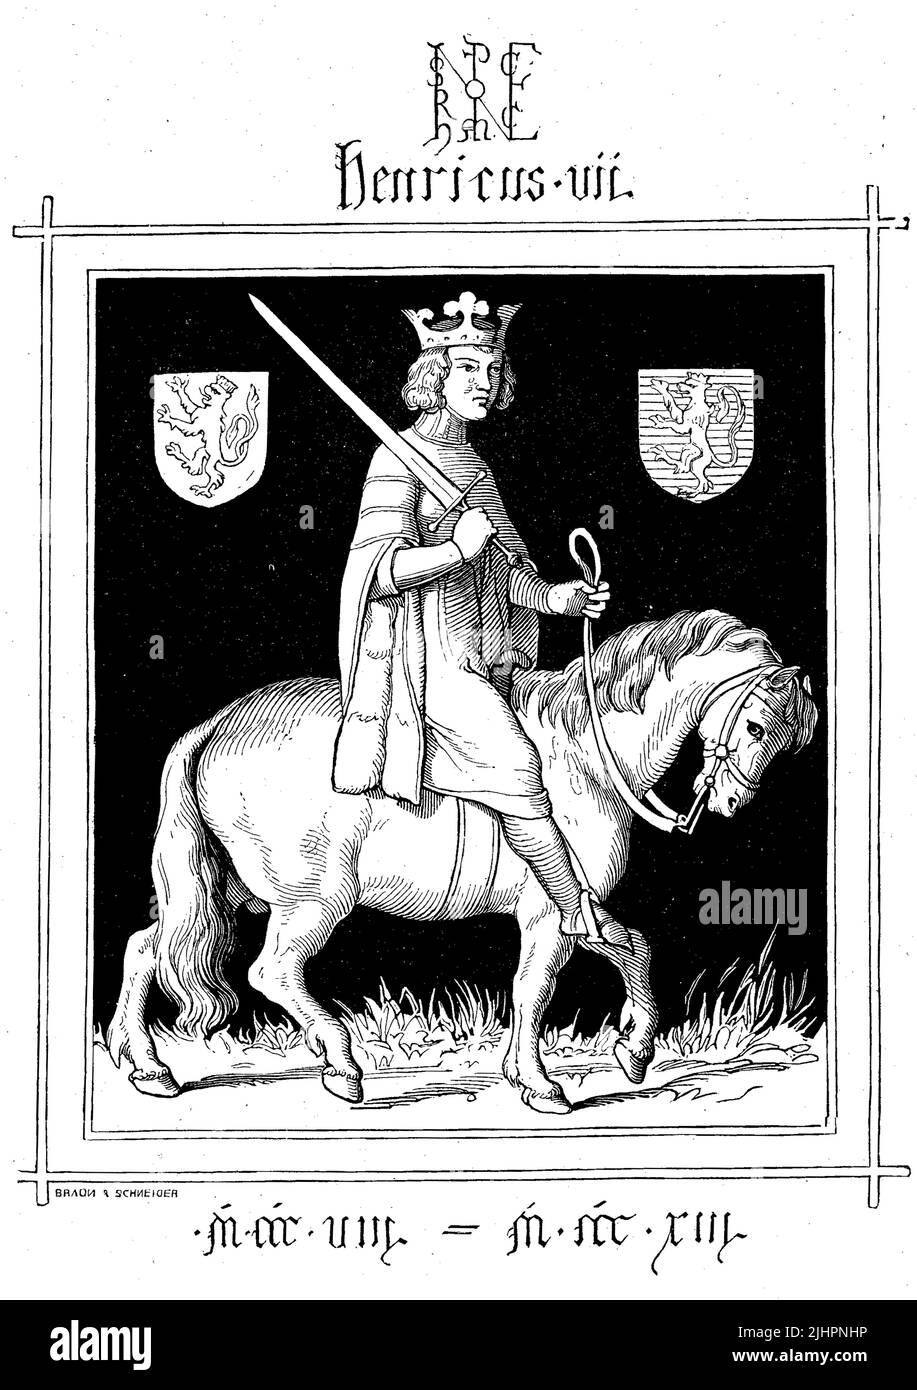 Heinrich VII (Geboren 1278/79, gestorben 24. August 1313) entstammte dem Haus Limburg-Luxemburg und war Graf von Luxemburg und Laroche sowie Markgraf von Arlon. Er war von 1308 bis 1313 römisch-deutscher König und seit dem 29. Juni 1312 römisch-deutscher Kaiser / Heinrich VII. (Geboren 1278/79, gestorben 24. August 1313) stammte aus dem Haus Limburg-Luxemburg und war Graf von Luxemburg und Laroche und Markgraf von Arlon. Er war von 1308 bis 1313 römisch-deutscher König und seit 29. Juni 1312 römisch-deutscher Kaiser, historisch, digital restaurierte Produktion einer Originalvorlage aus dem 19. Jah Stockfoto